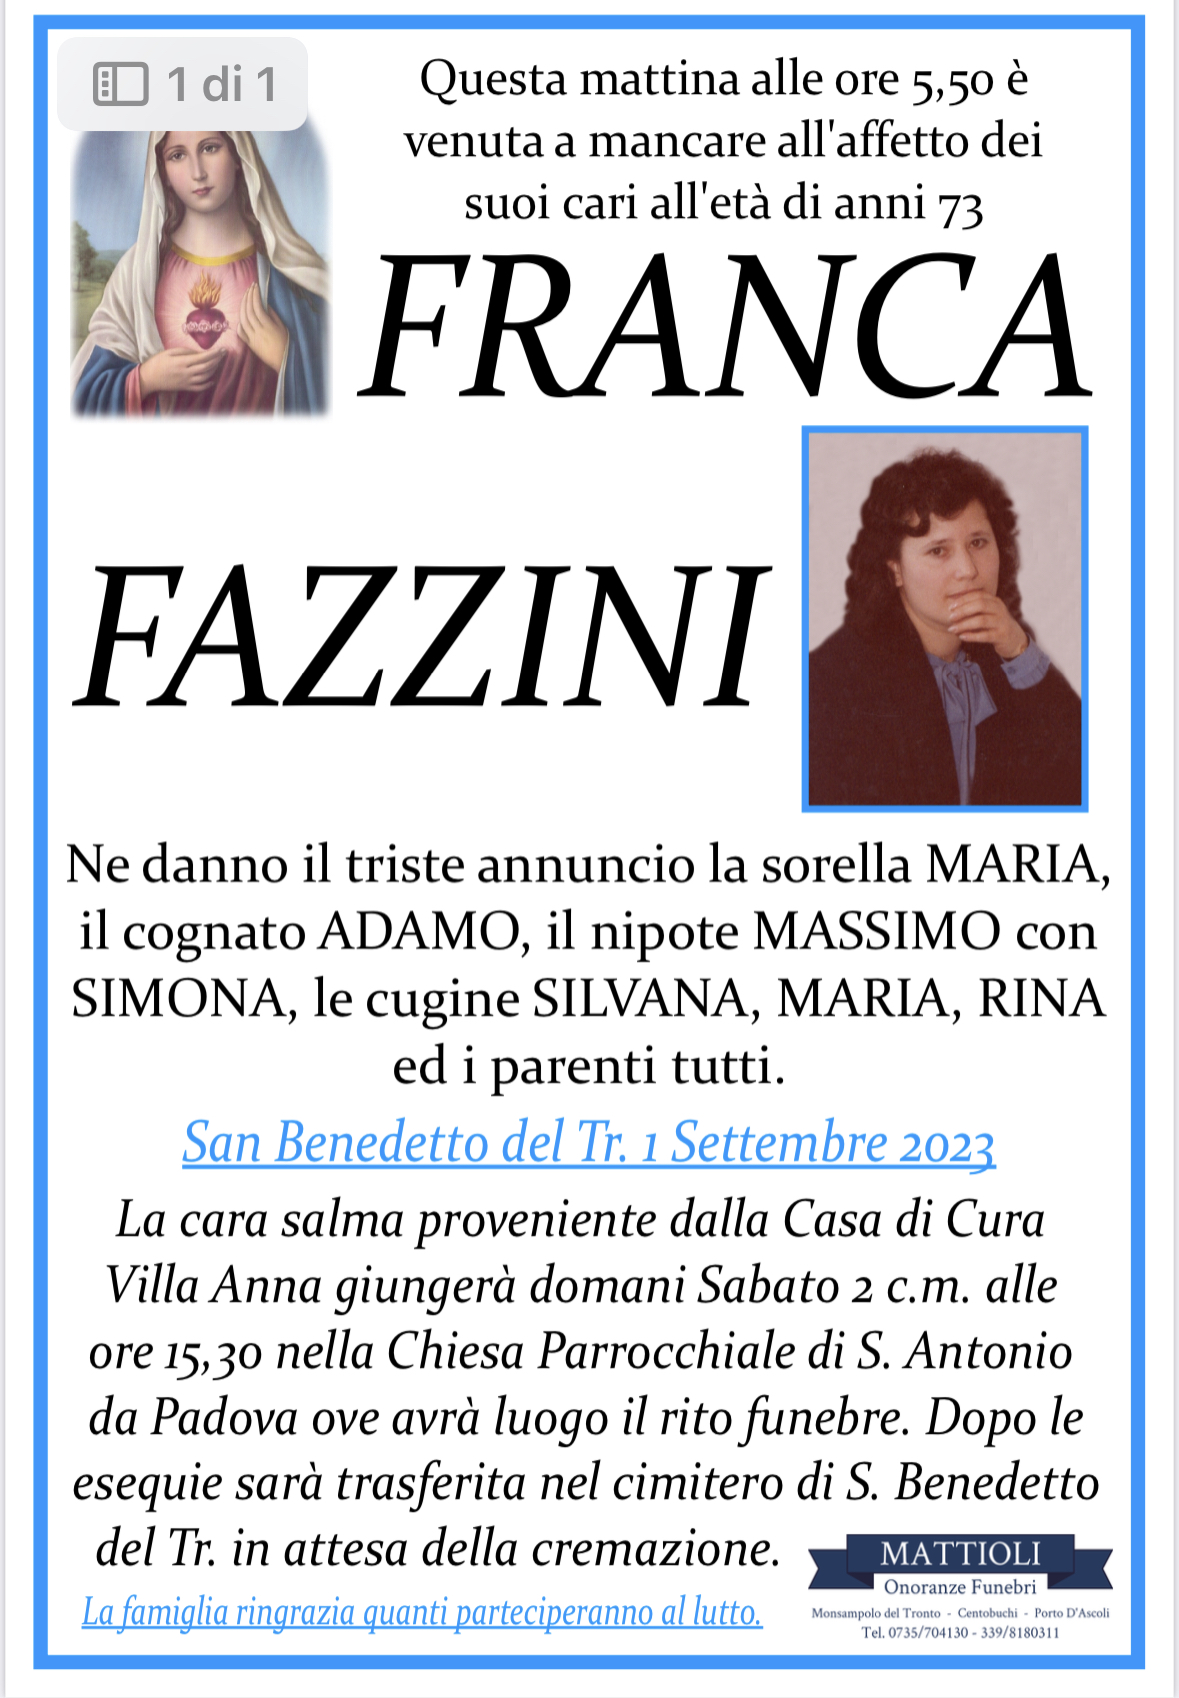 Franca Fazzini